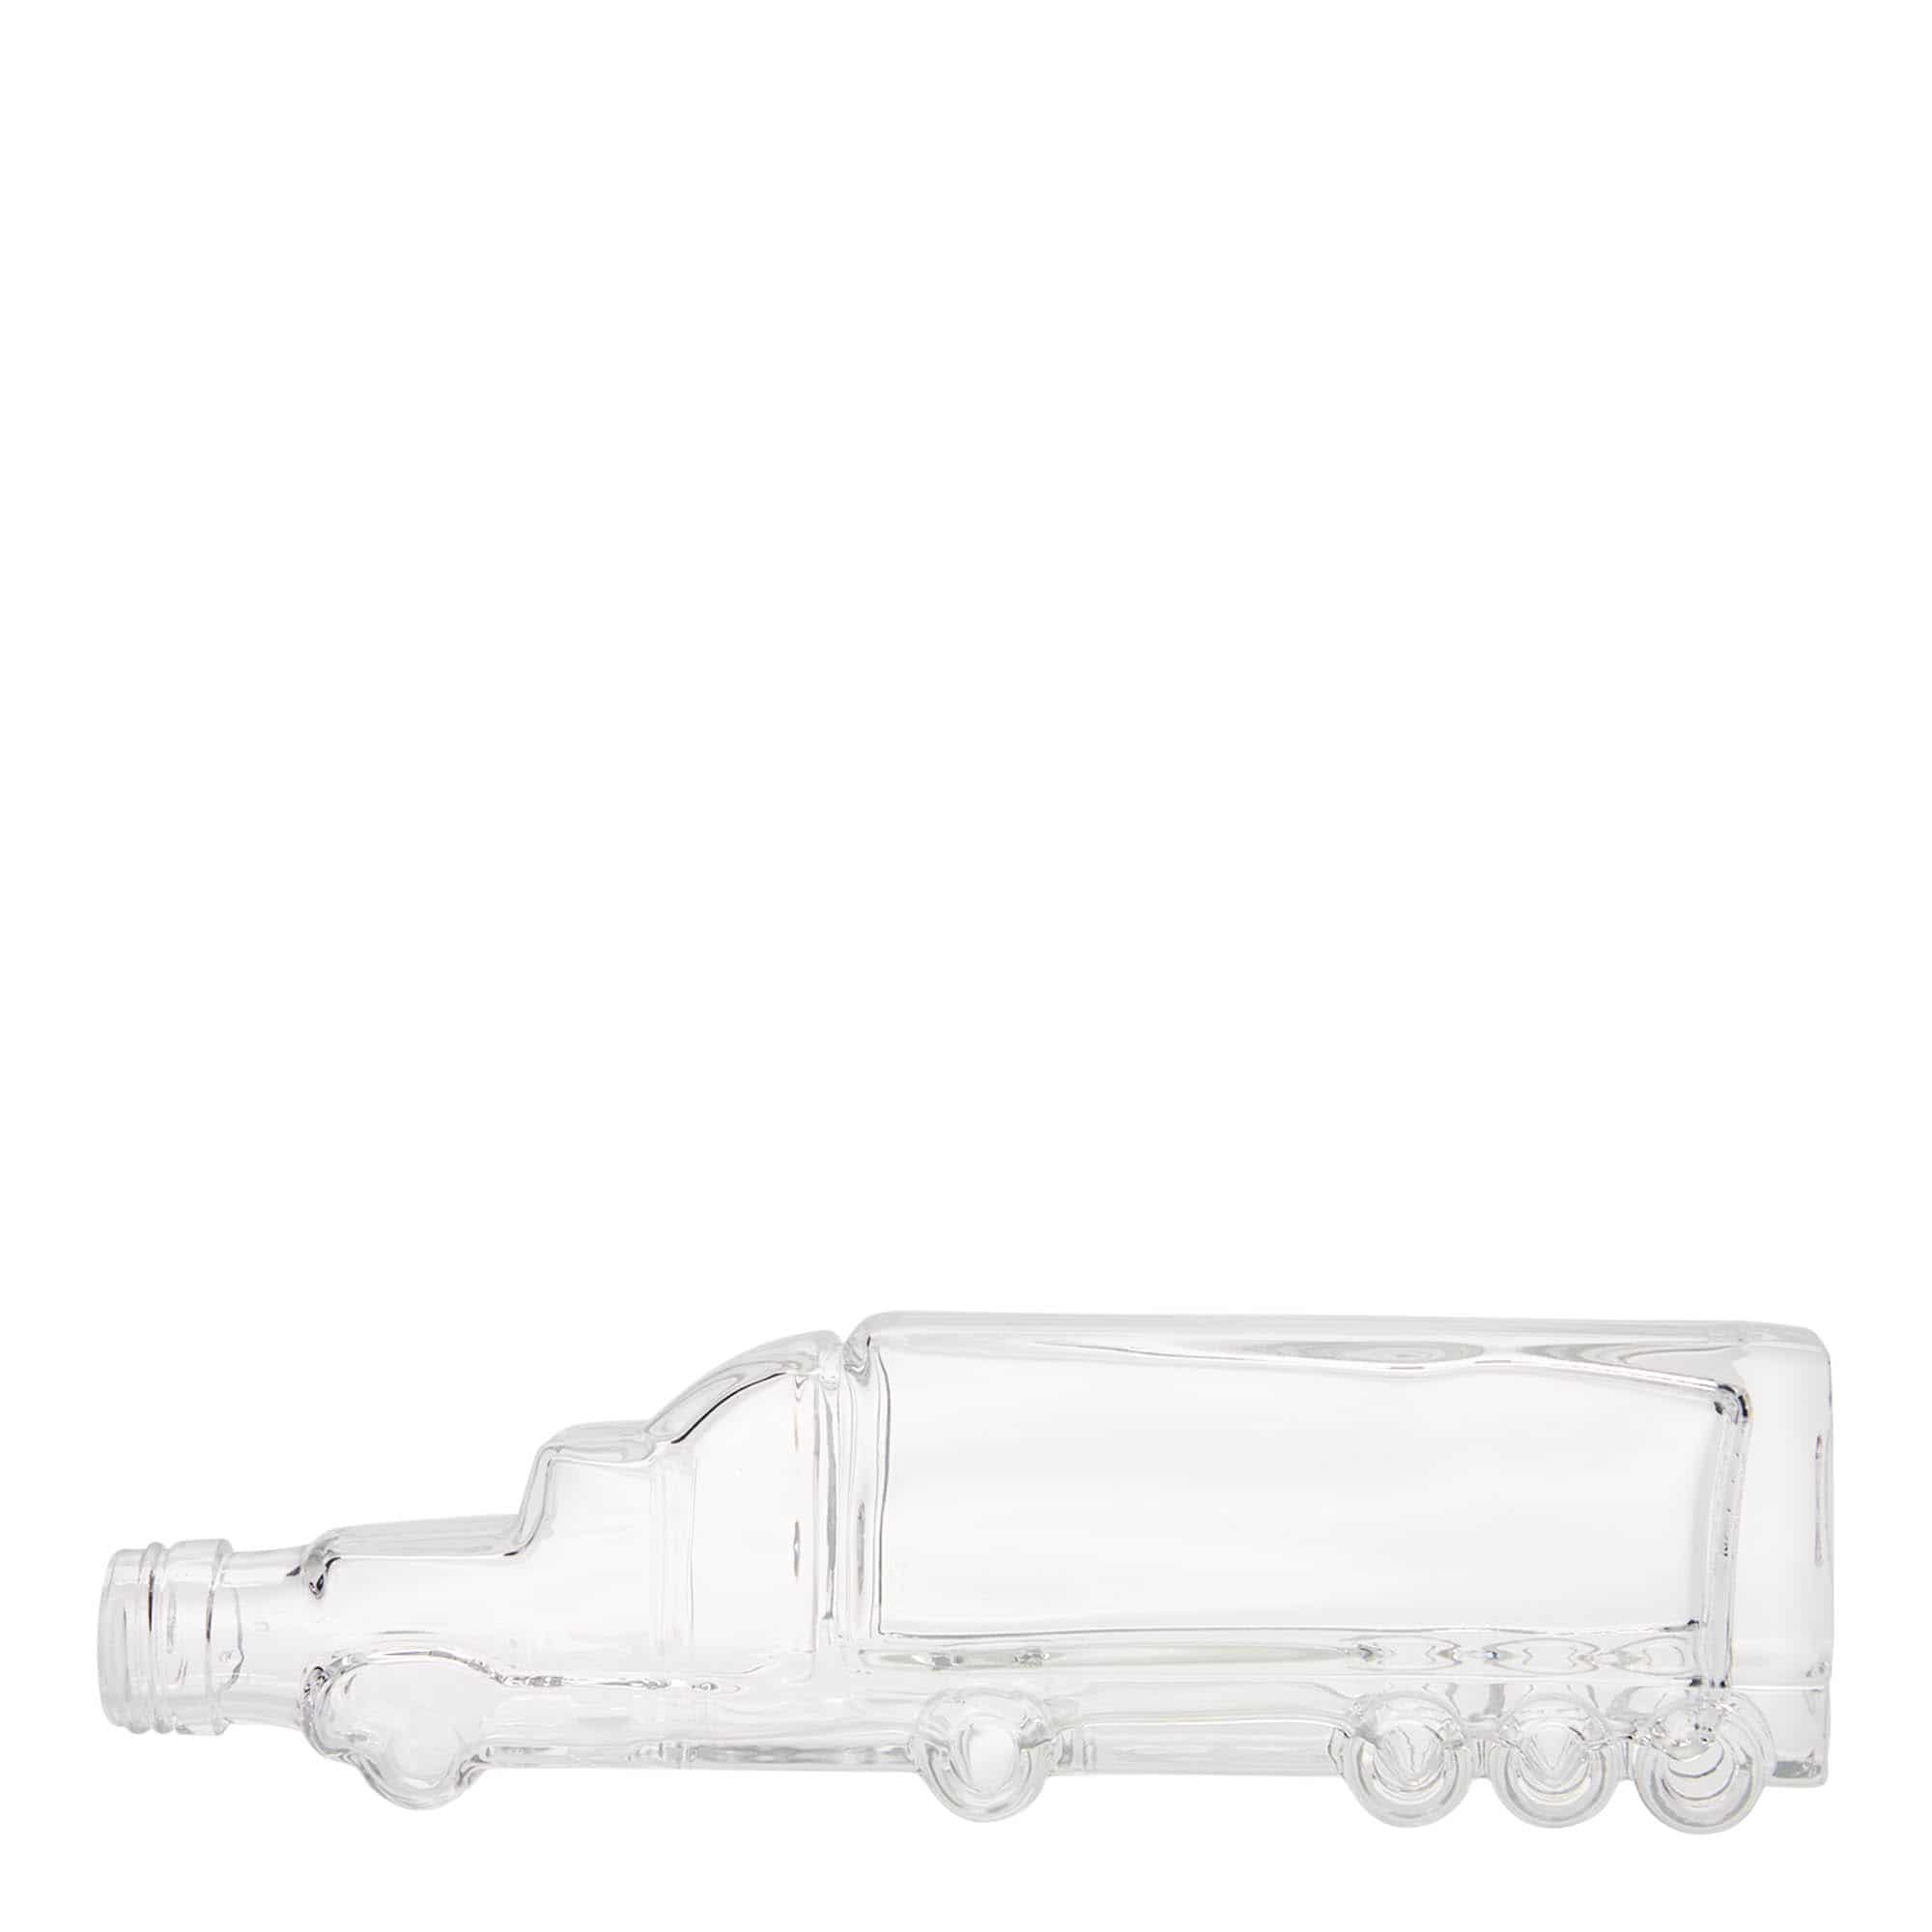 200 ml glass bottle 'Truck', closure: PP 25